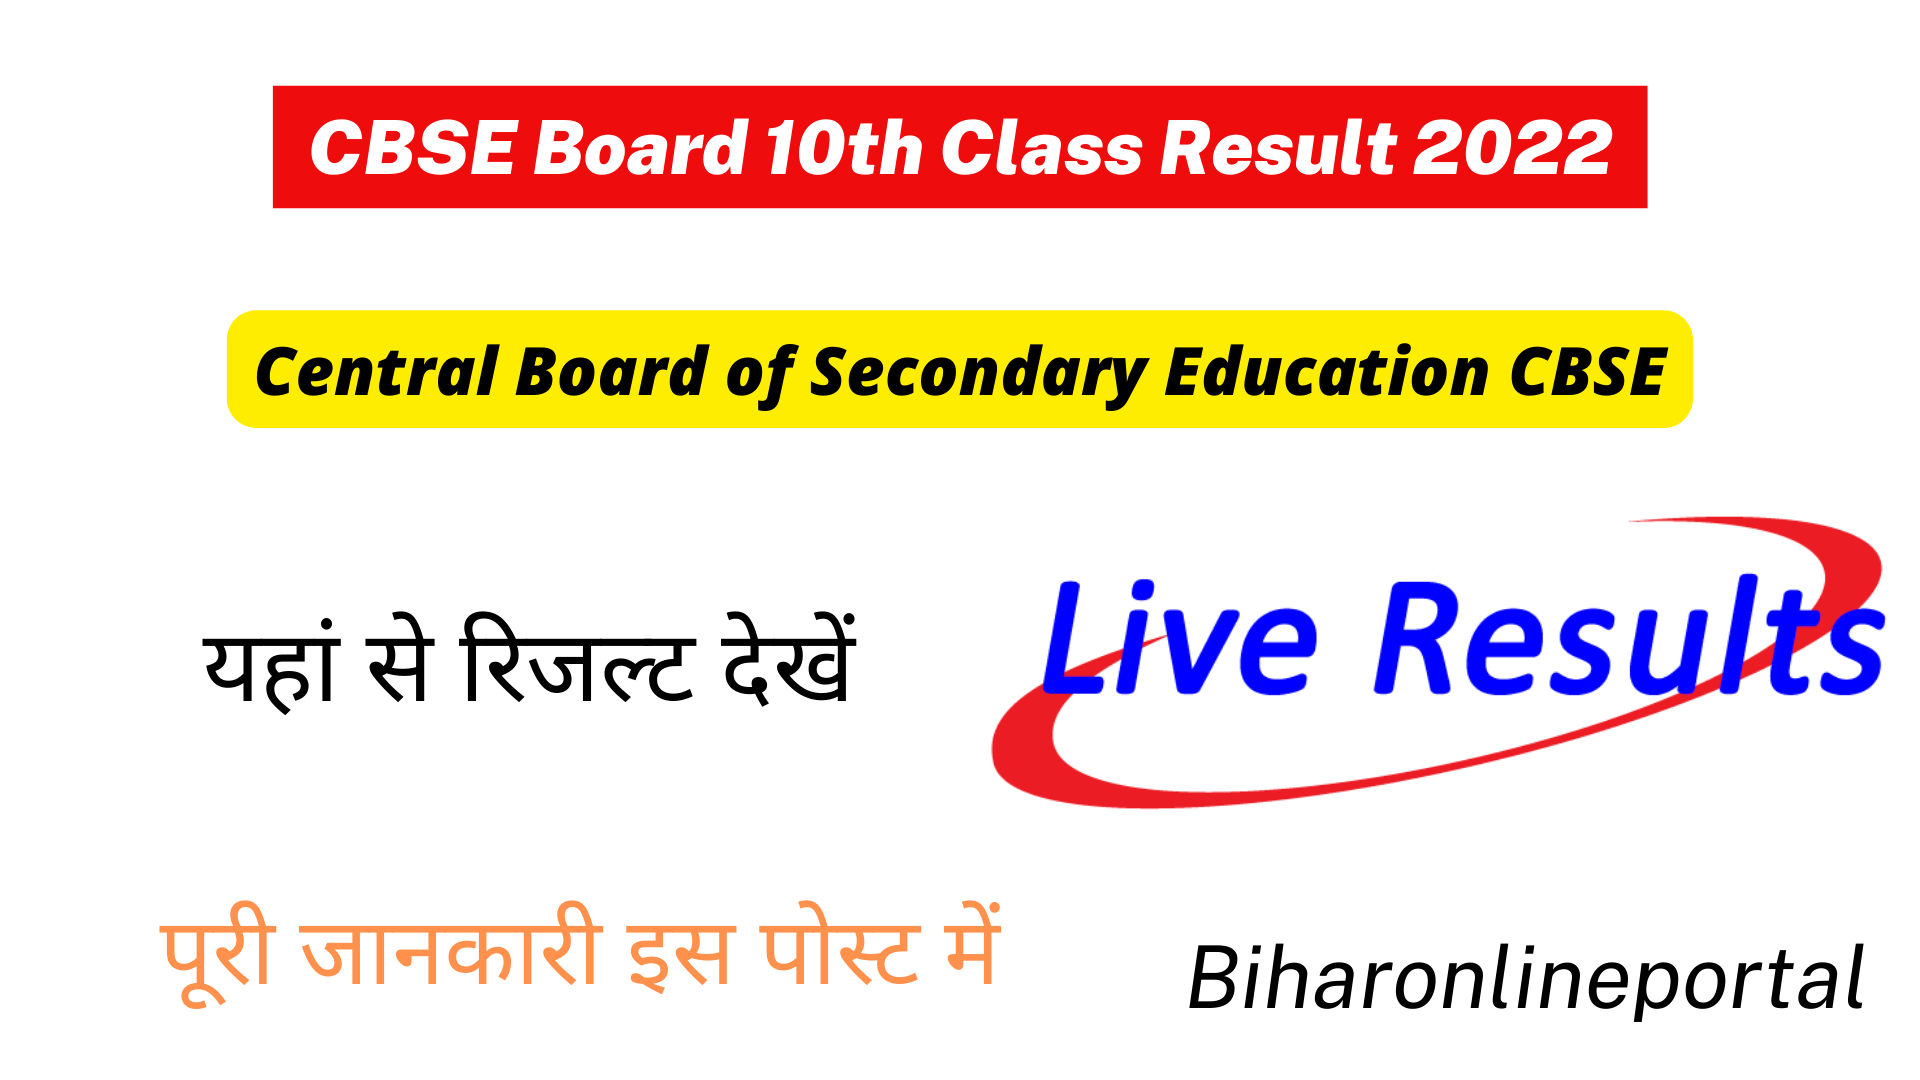 CBSE Board 10th Class Result 2022